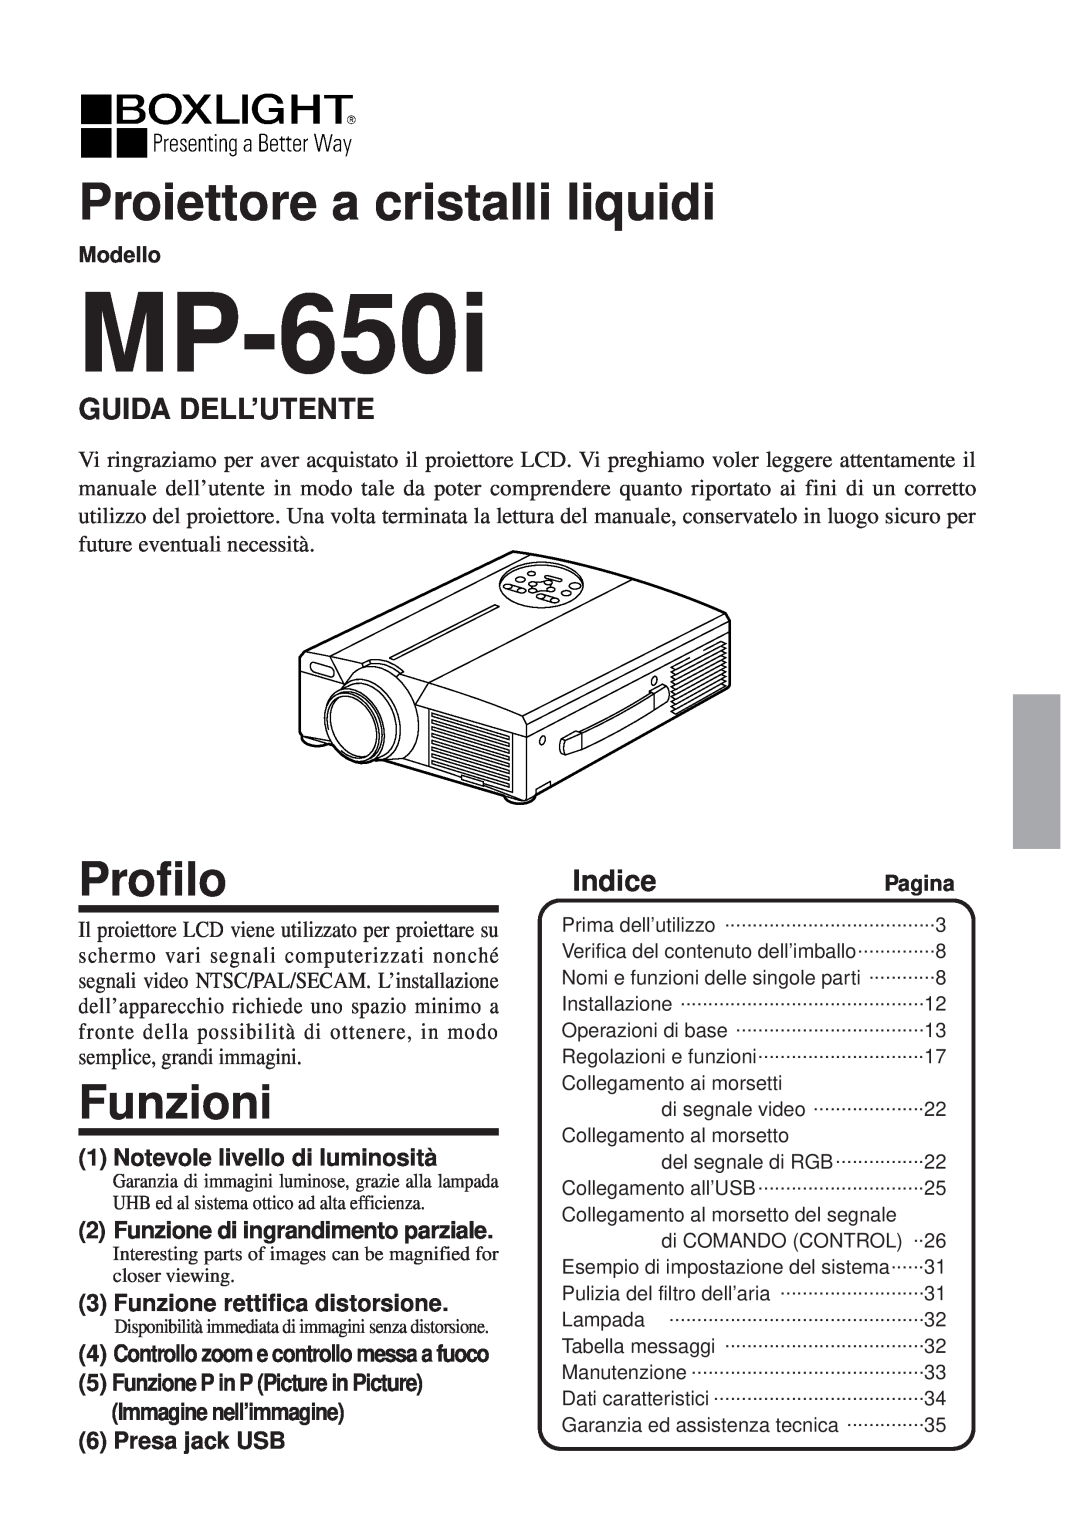 BOXLIGHT MP-650i Proiettore a cristalli liquidi, Profilo, Funzioni, Guida Dell’Utente, IndicePagina, Presa jack USB 